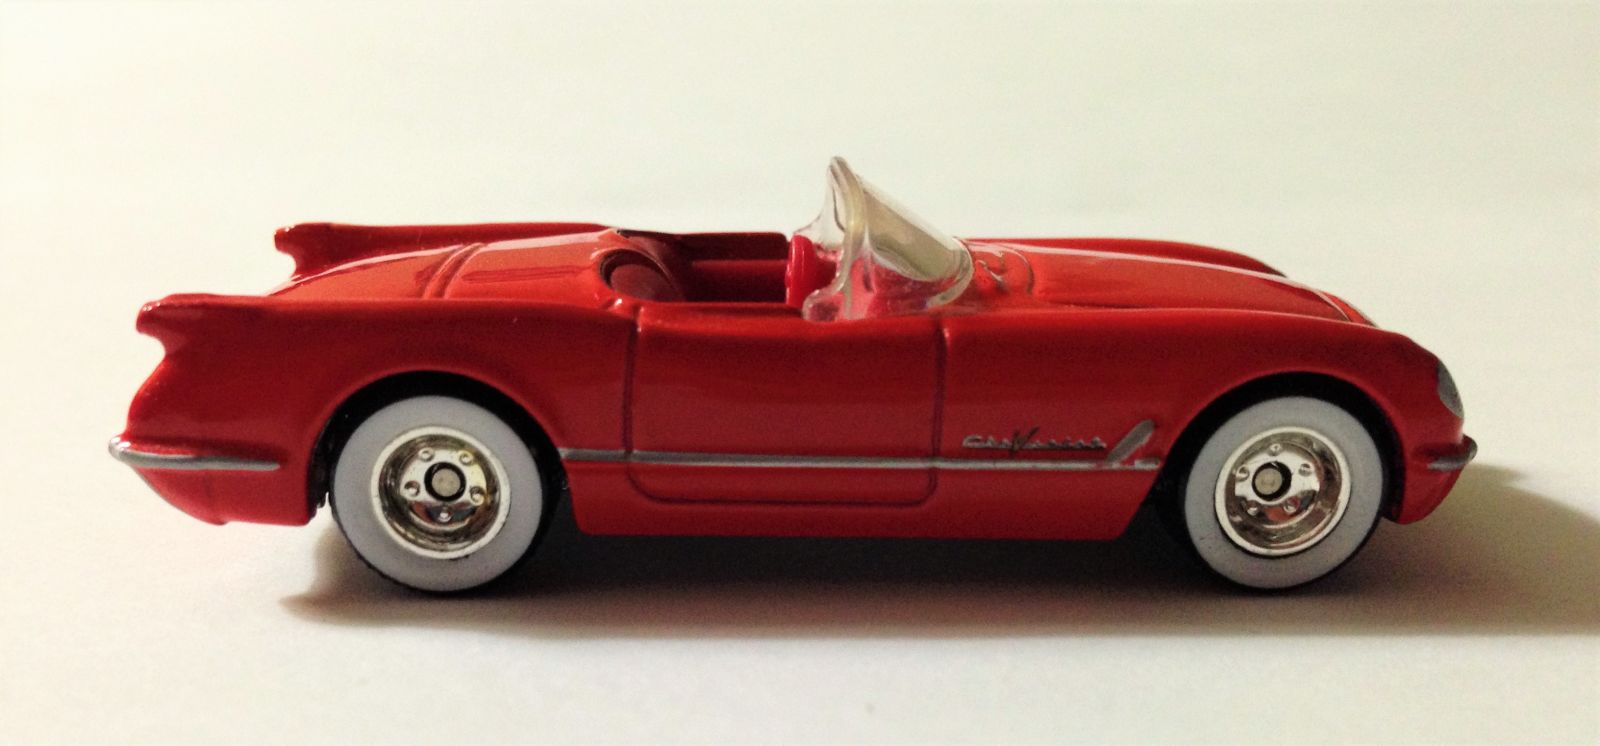 Illustration for article titled Little Red Corvette(s)